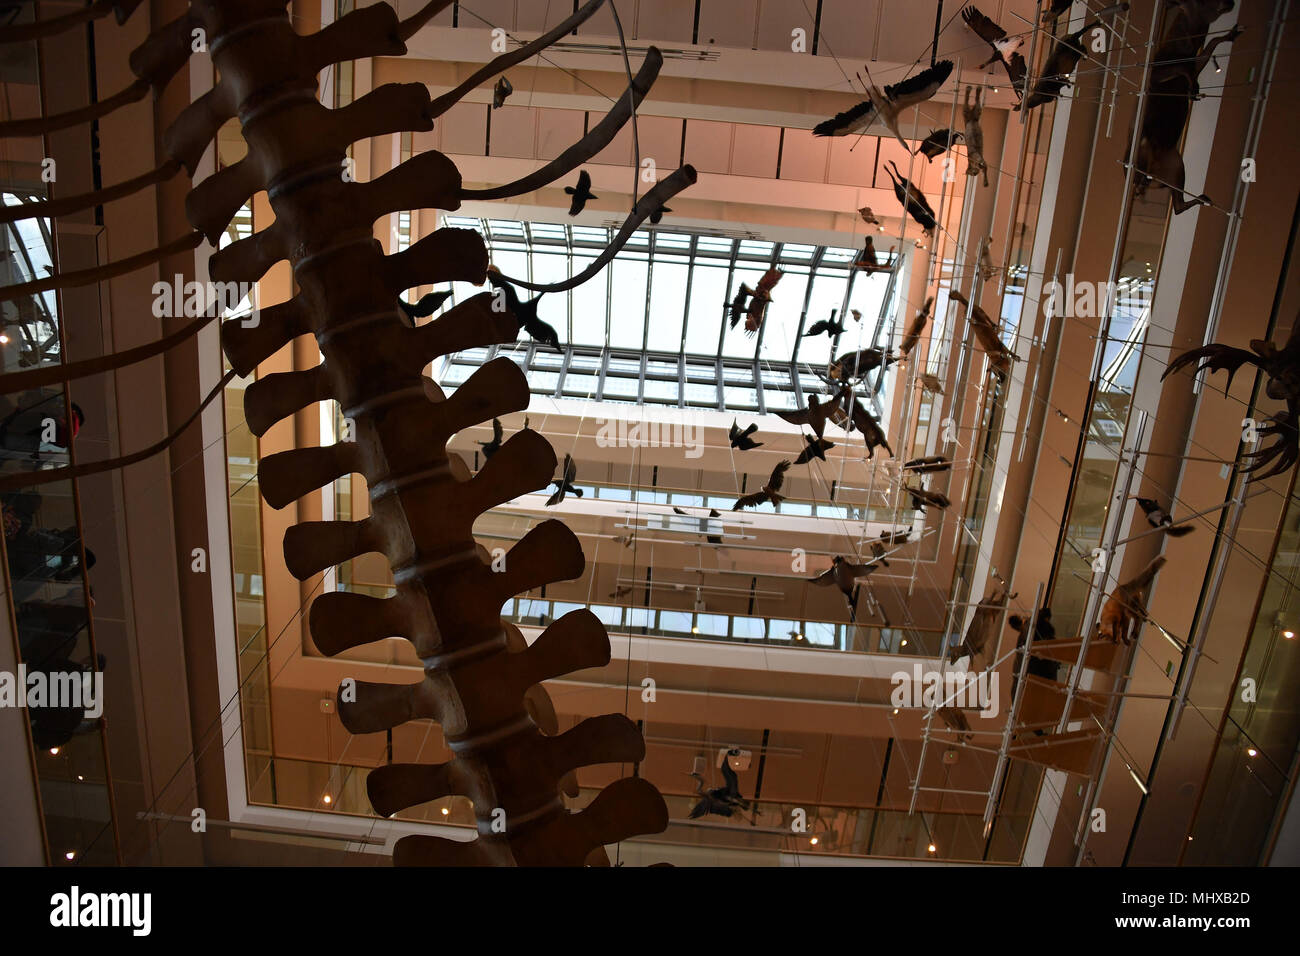 TRENTO, ITALIEN - MÄRZ 27 2018 - Muse ist die neue interaktive Museum von Italien, von bekannten Architekten Renzo Piano entworfen, voll von Studenten in Intera Stockfoto